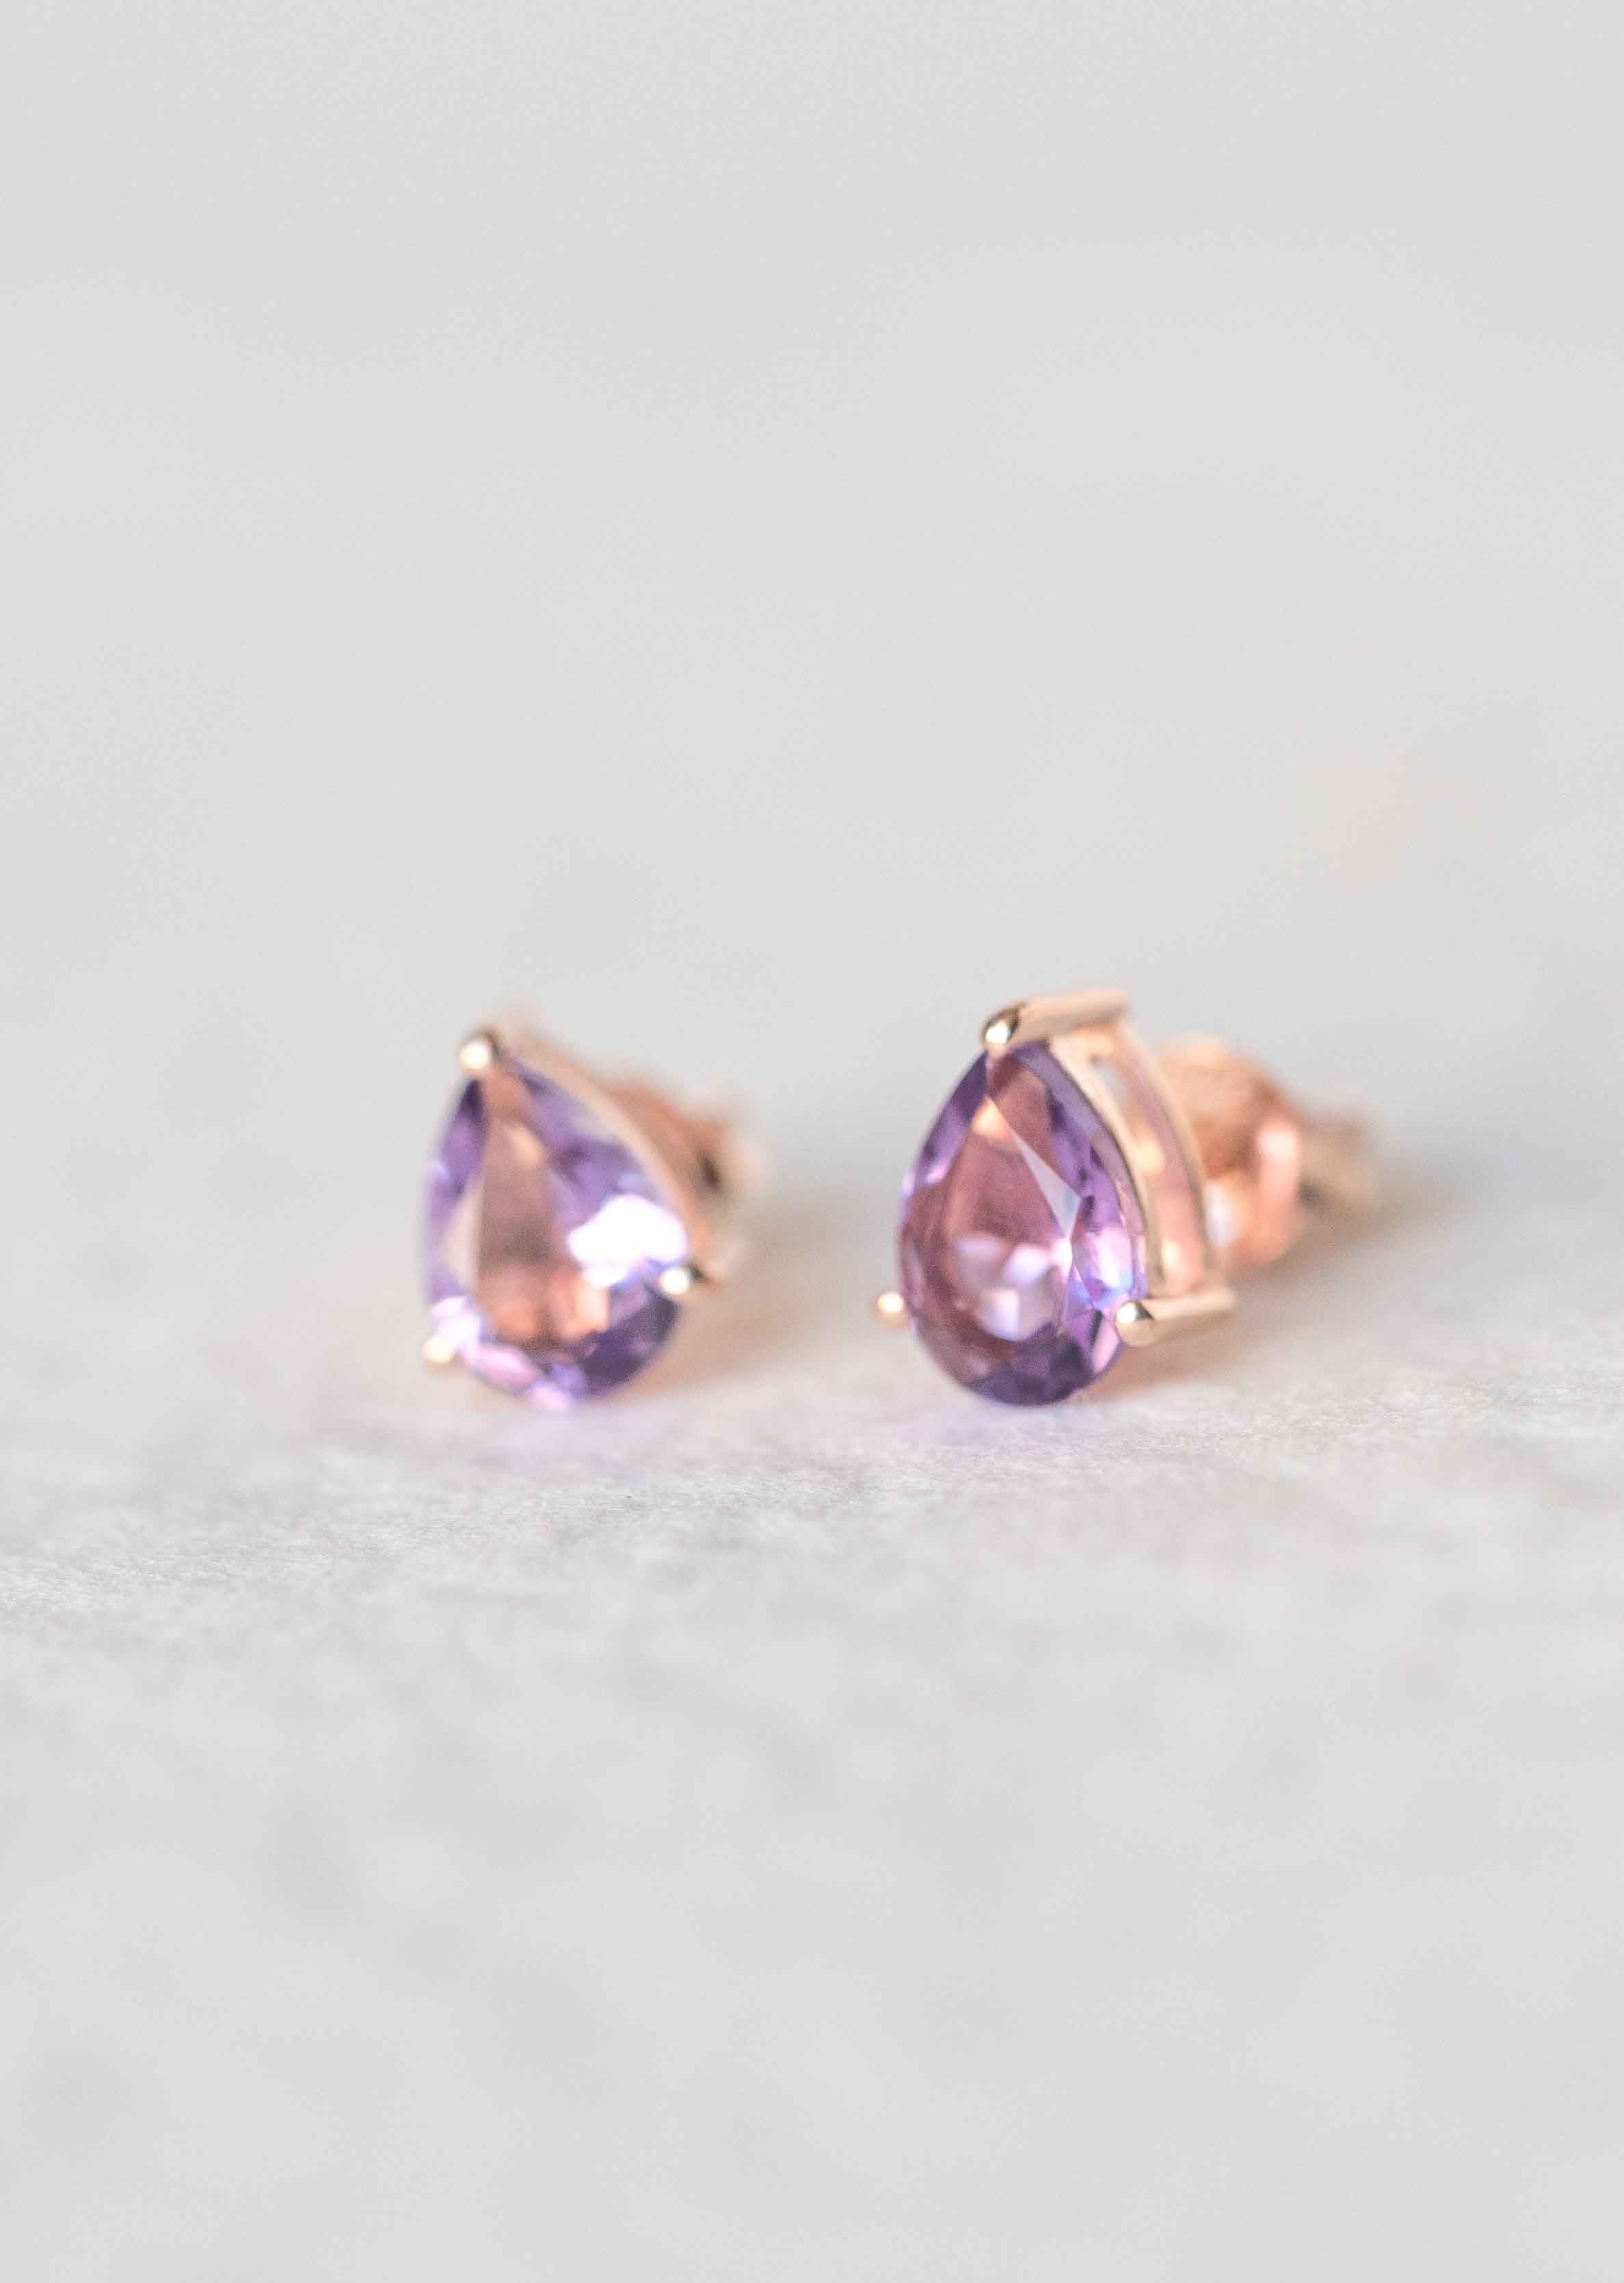 Amethyst Pear Shape Stud Earrings Gifts for girls women girlfriend cartilage second piercing earrings